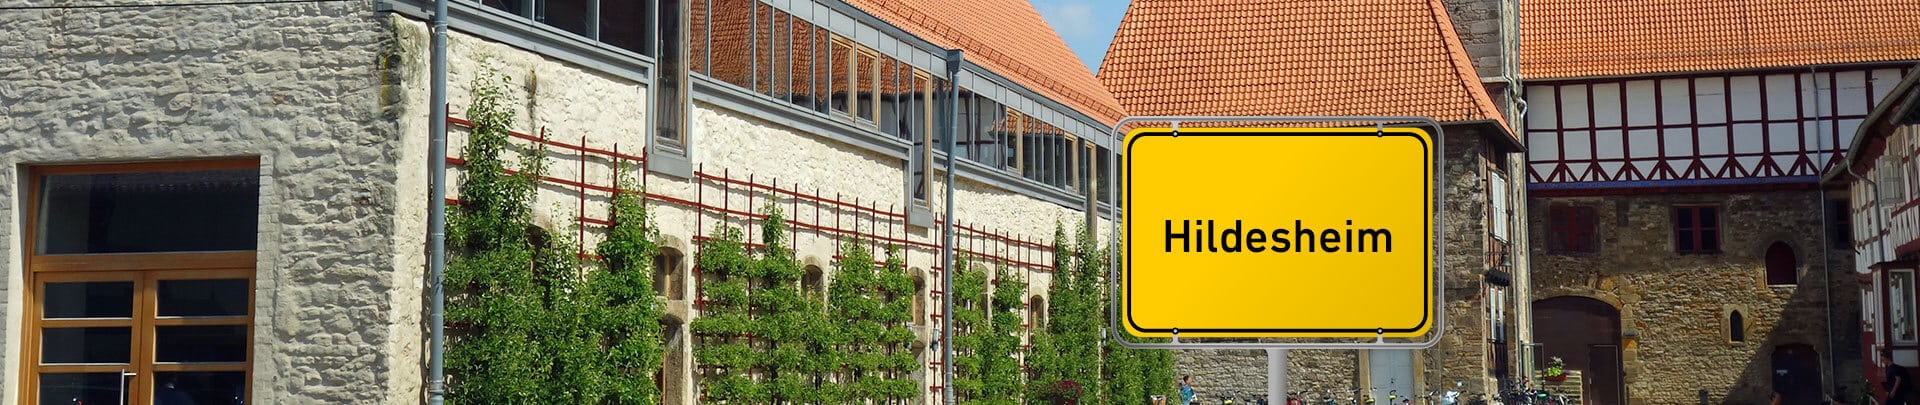 Immobilienpreise Hildesheim